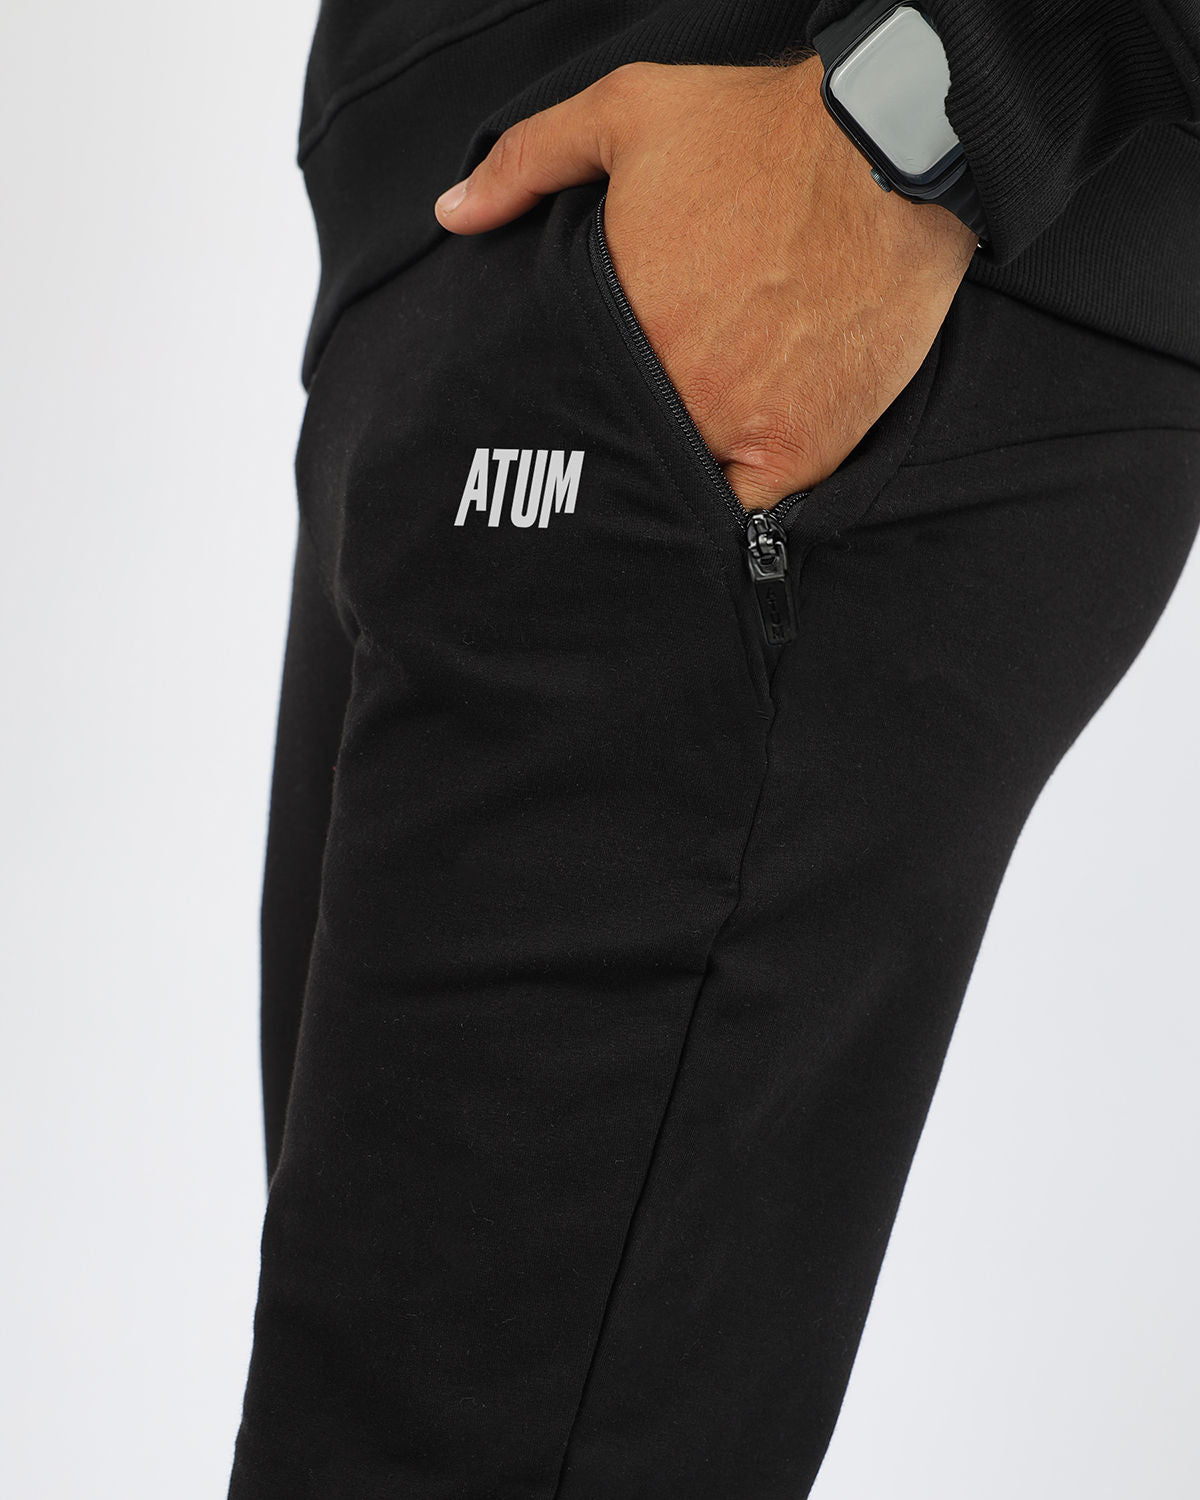 Atum Men's Essential Jogger Pants - Atum Egypt